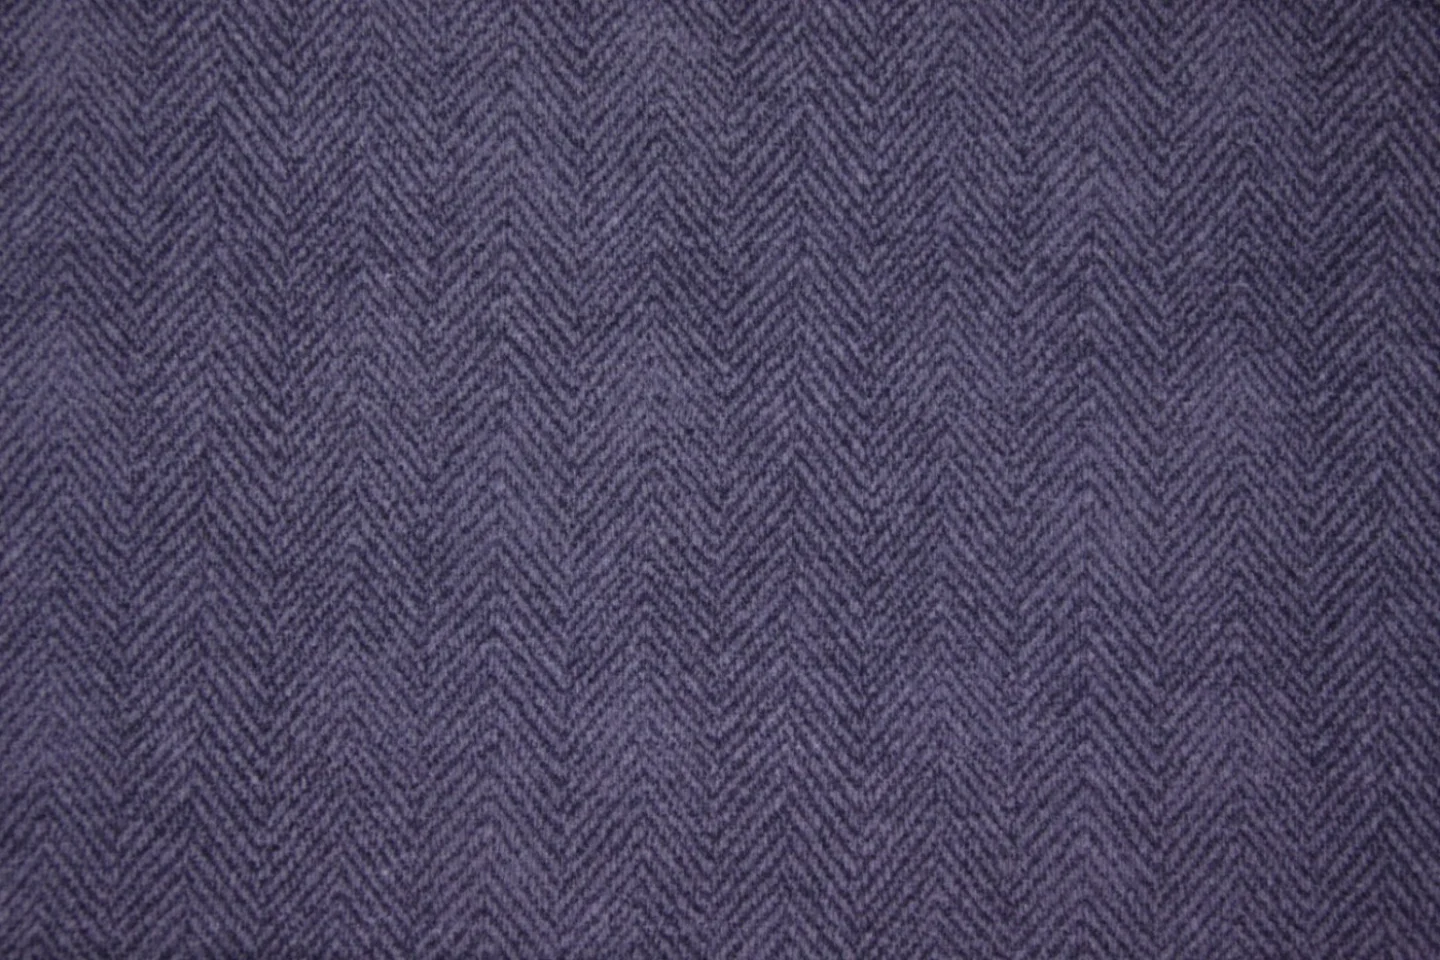 quiltstof-violet-visgraat-flanel-woolies.